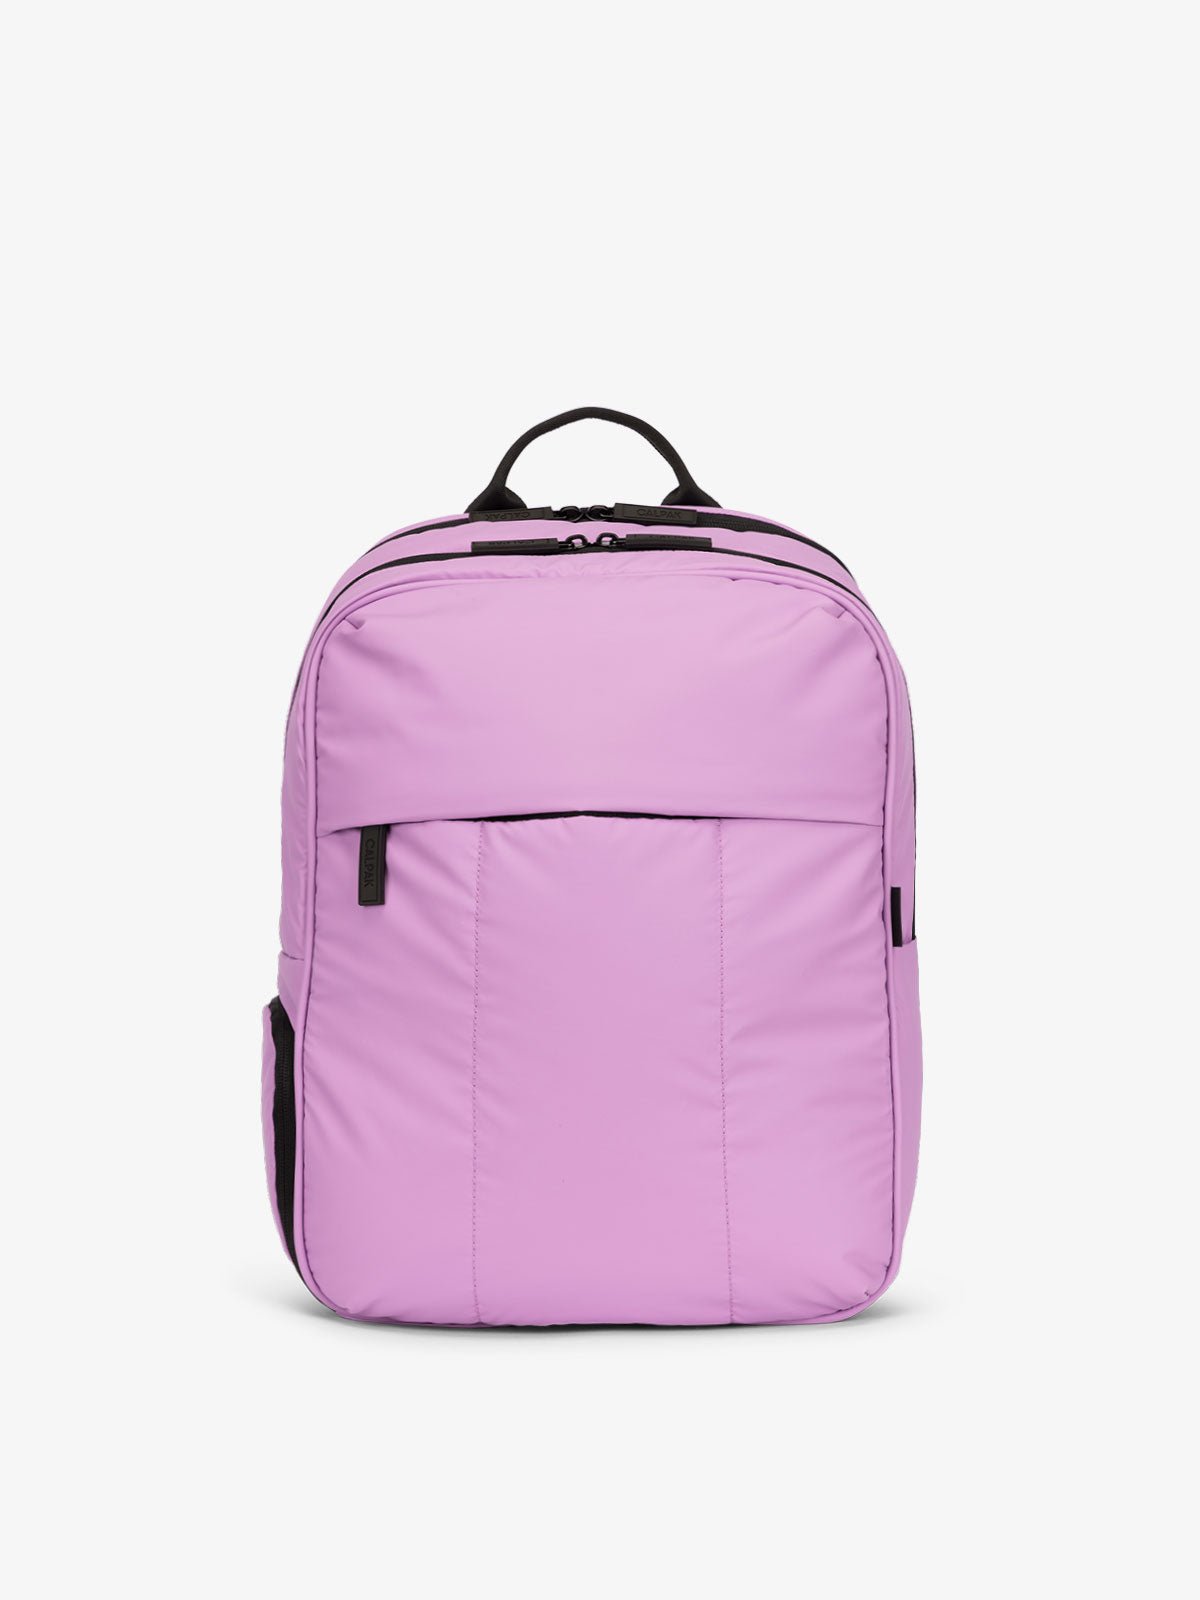 CALPAK Luka Laptop Backpack for school in light purple lilac